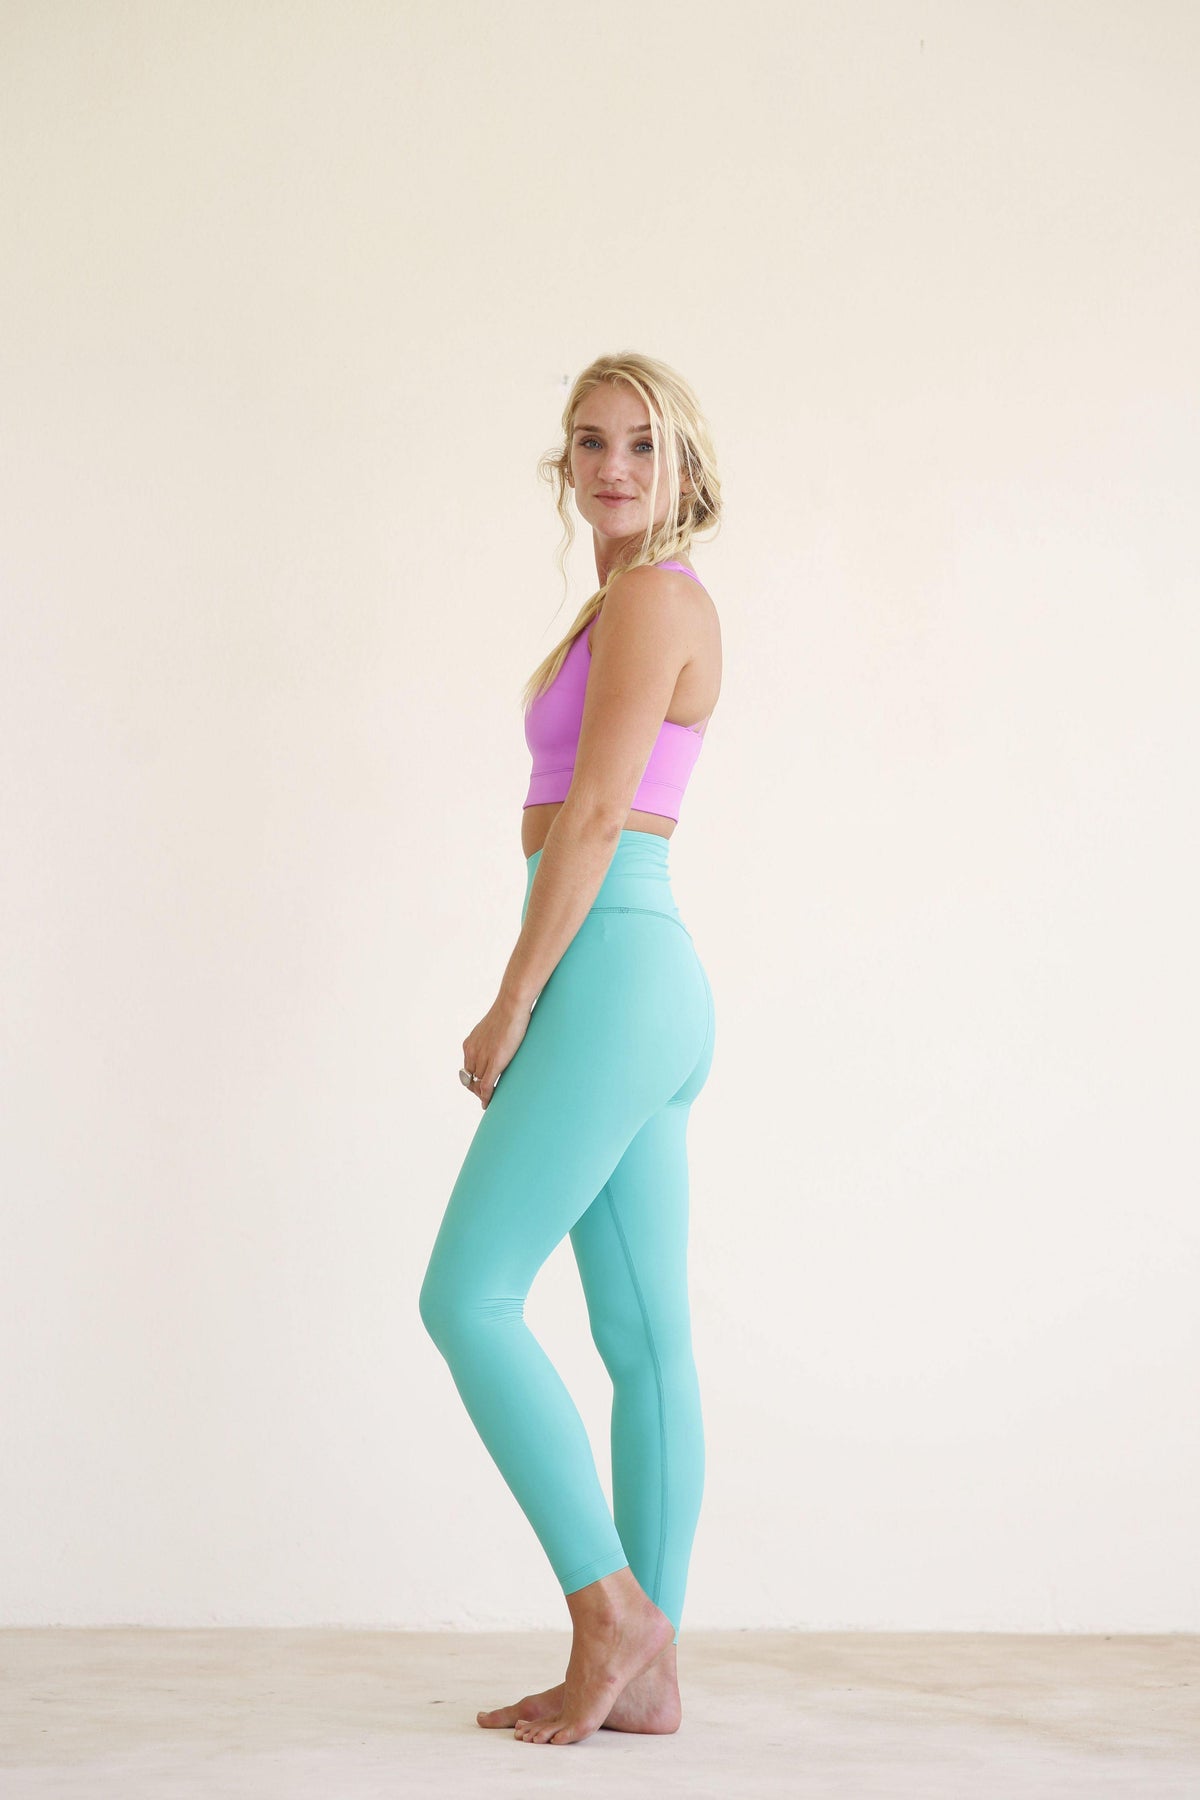 Minty High Waisted Workout Leggings | Light Blue Yoga Leggings